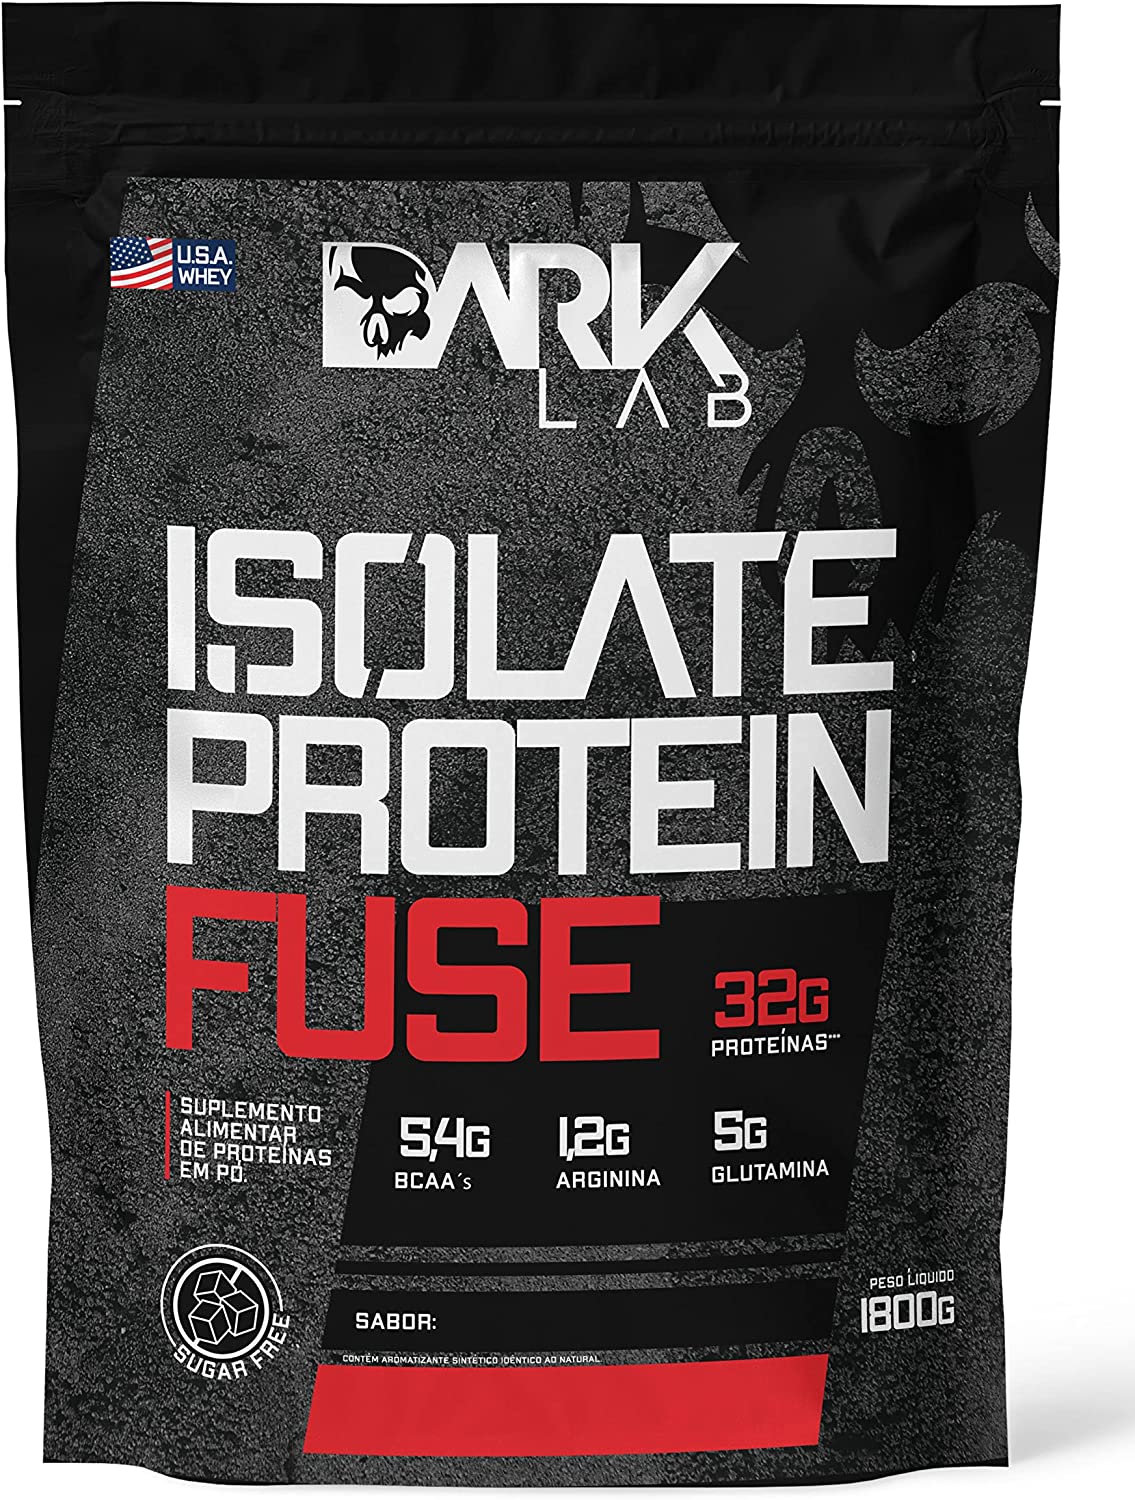 Isolate Protein Fuse 1,8kg Dark Lab (Cookies & Cream)